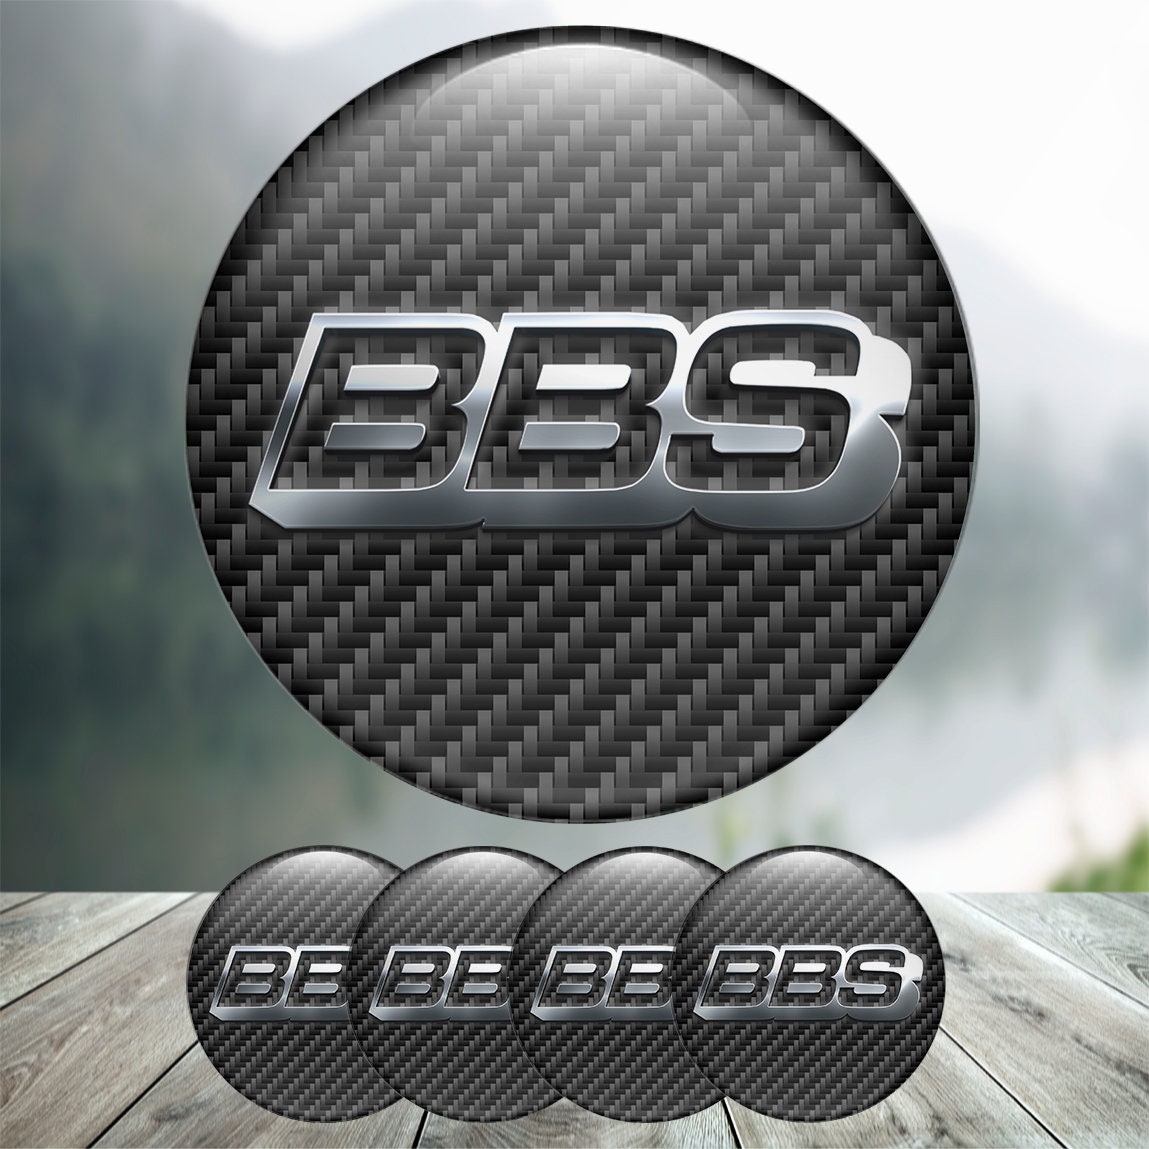  4x BBS Aufkleber Felgen (22x72 mm) Sticker Logo Auto  Tuning Optik Styling Decal 50 Jahre Jubiläum